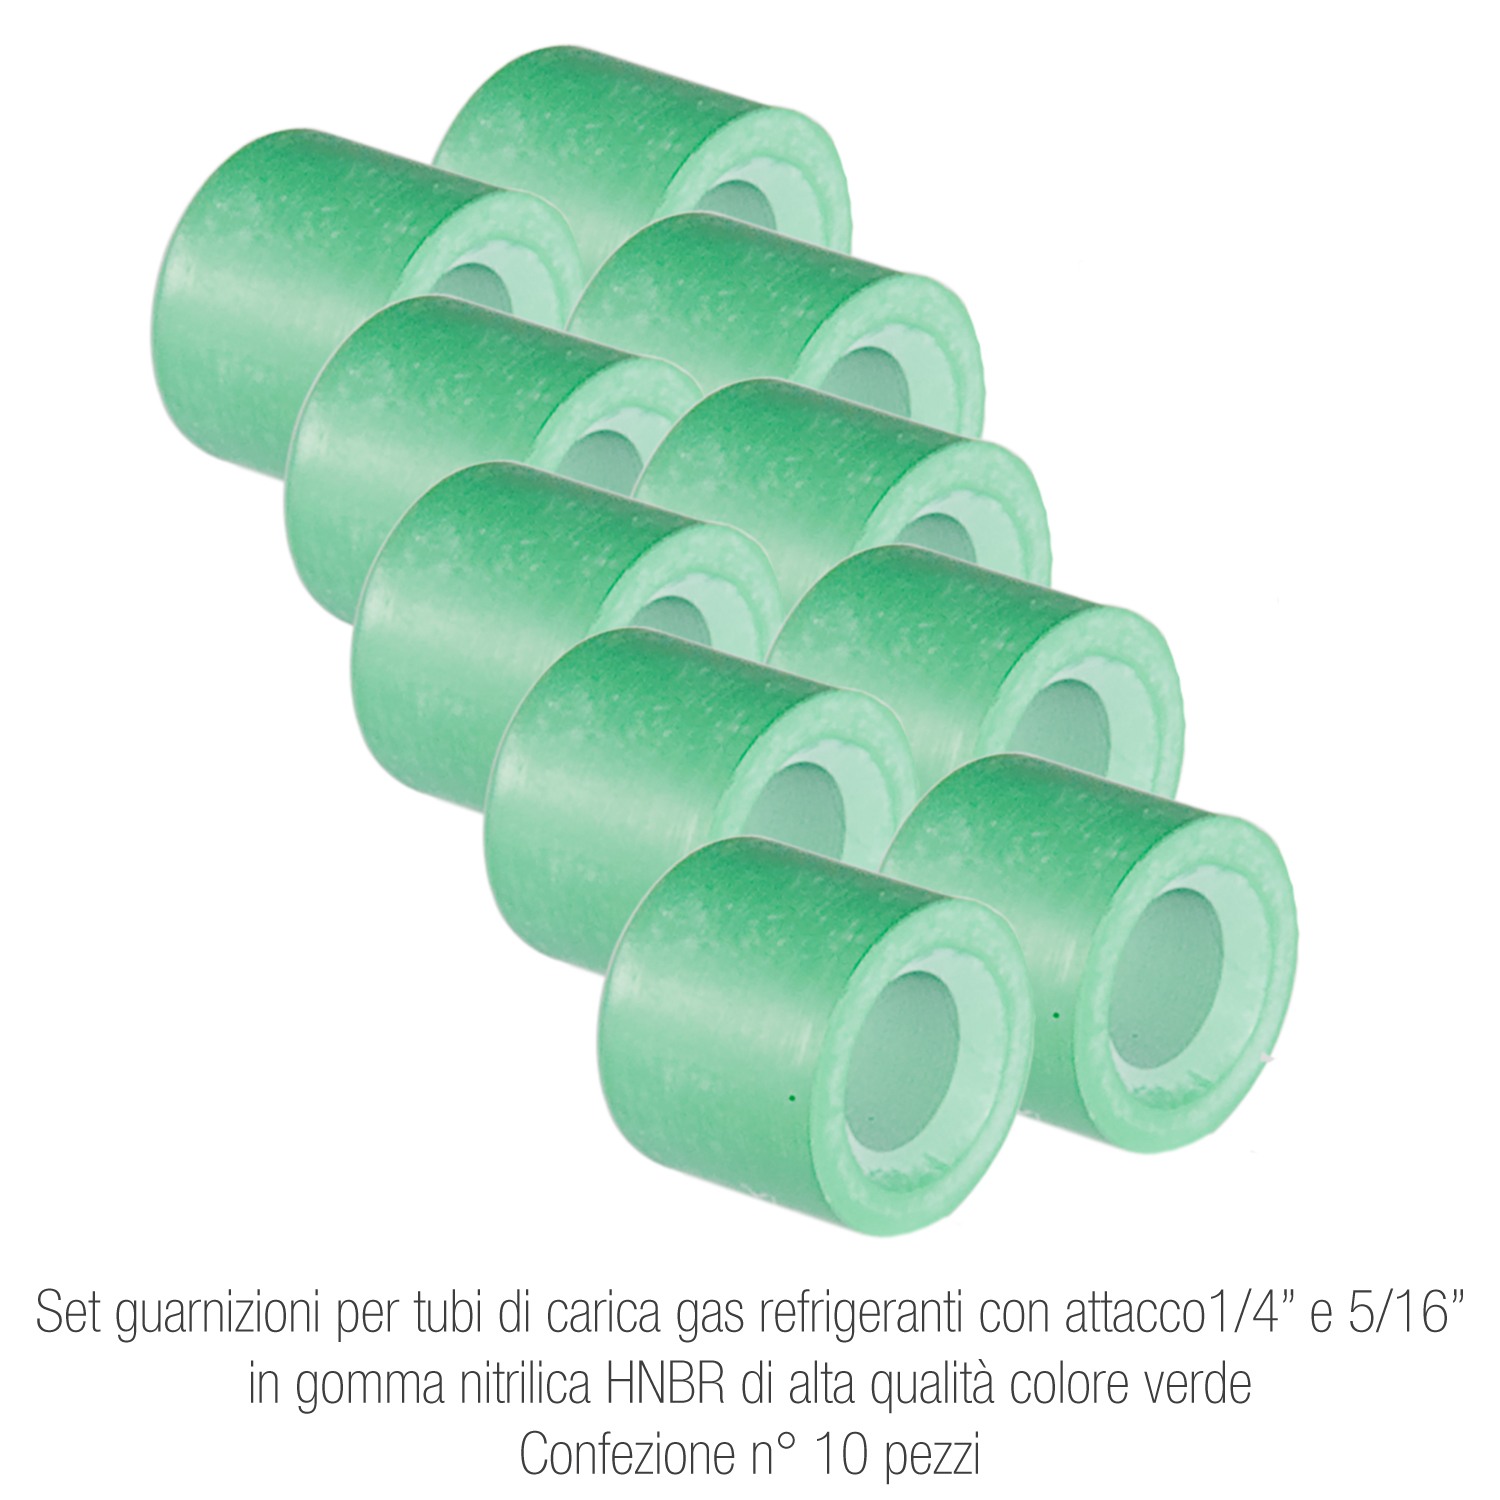 Set guarnizioni per tubi di carica gas refrigeranti - attacco ¼ e 5/16, in gomma nitrilica HNBR alta qualità colore verde - confezione n° 10 pezzi - Foto 1 